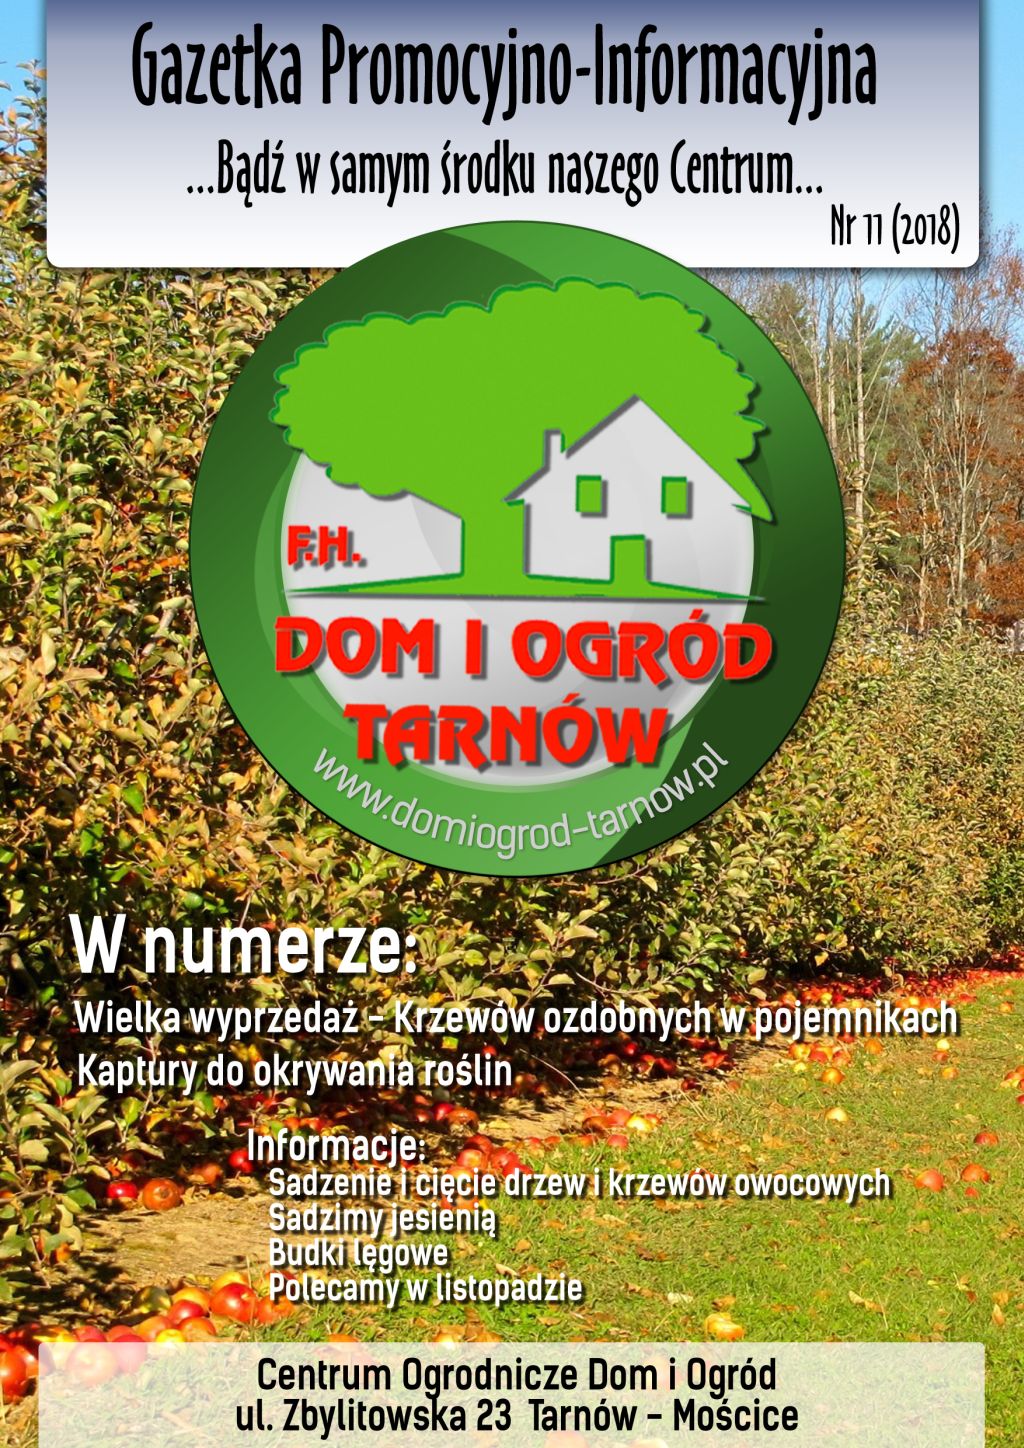 Gazetka Promocyjno-Informacyjna - 11/2018